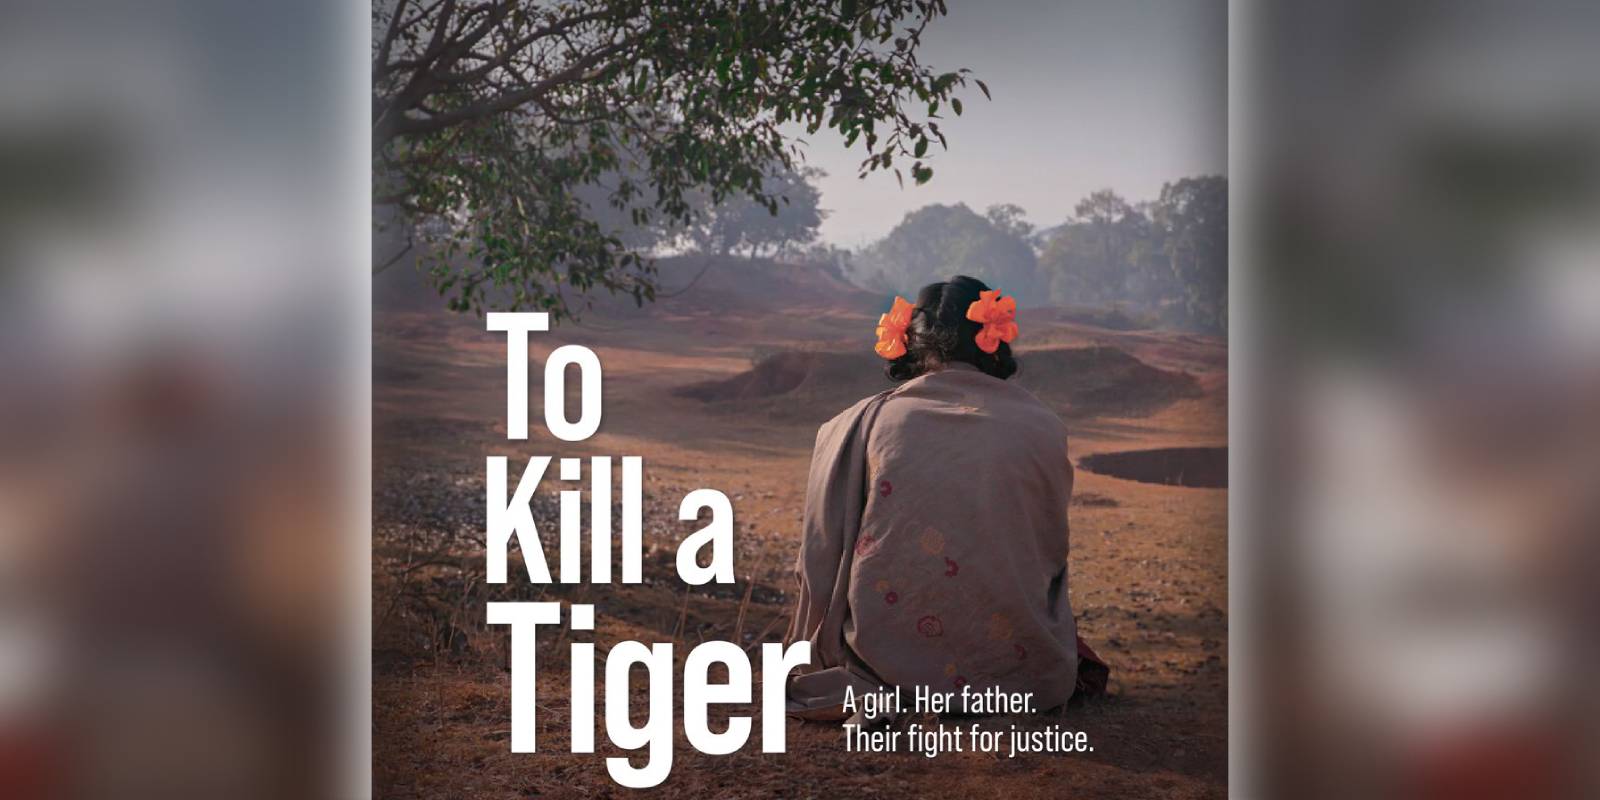 To Kill a Tiger loses at academy awards